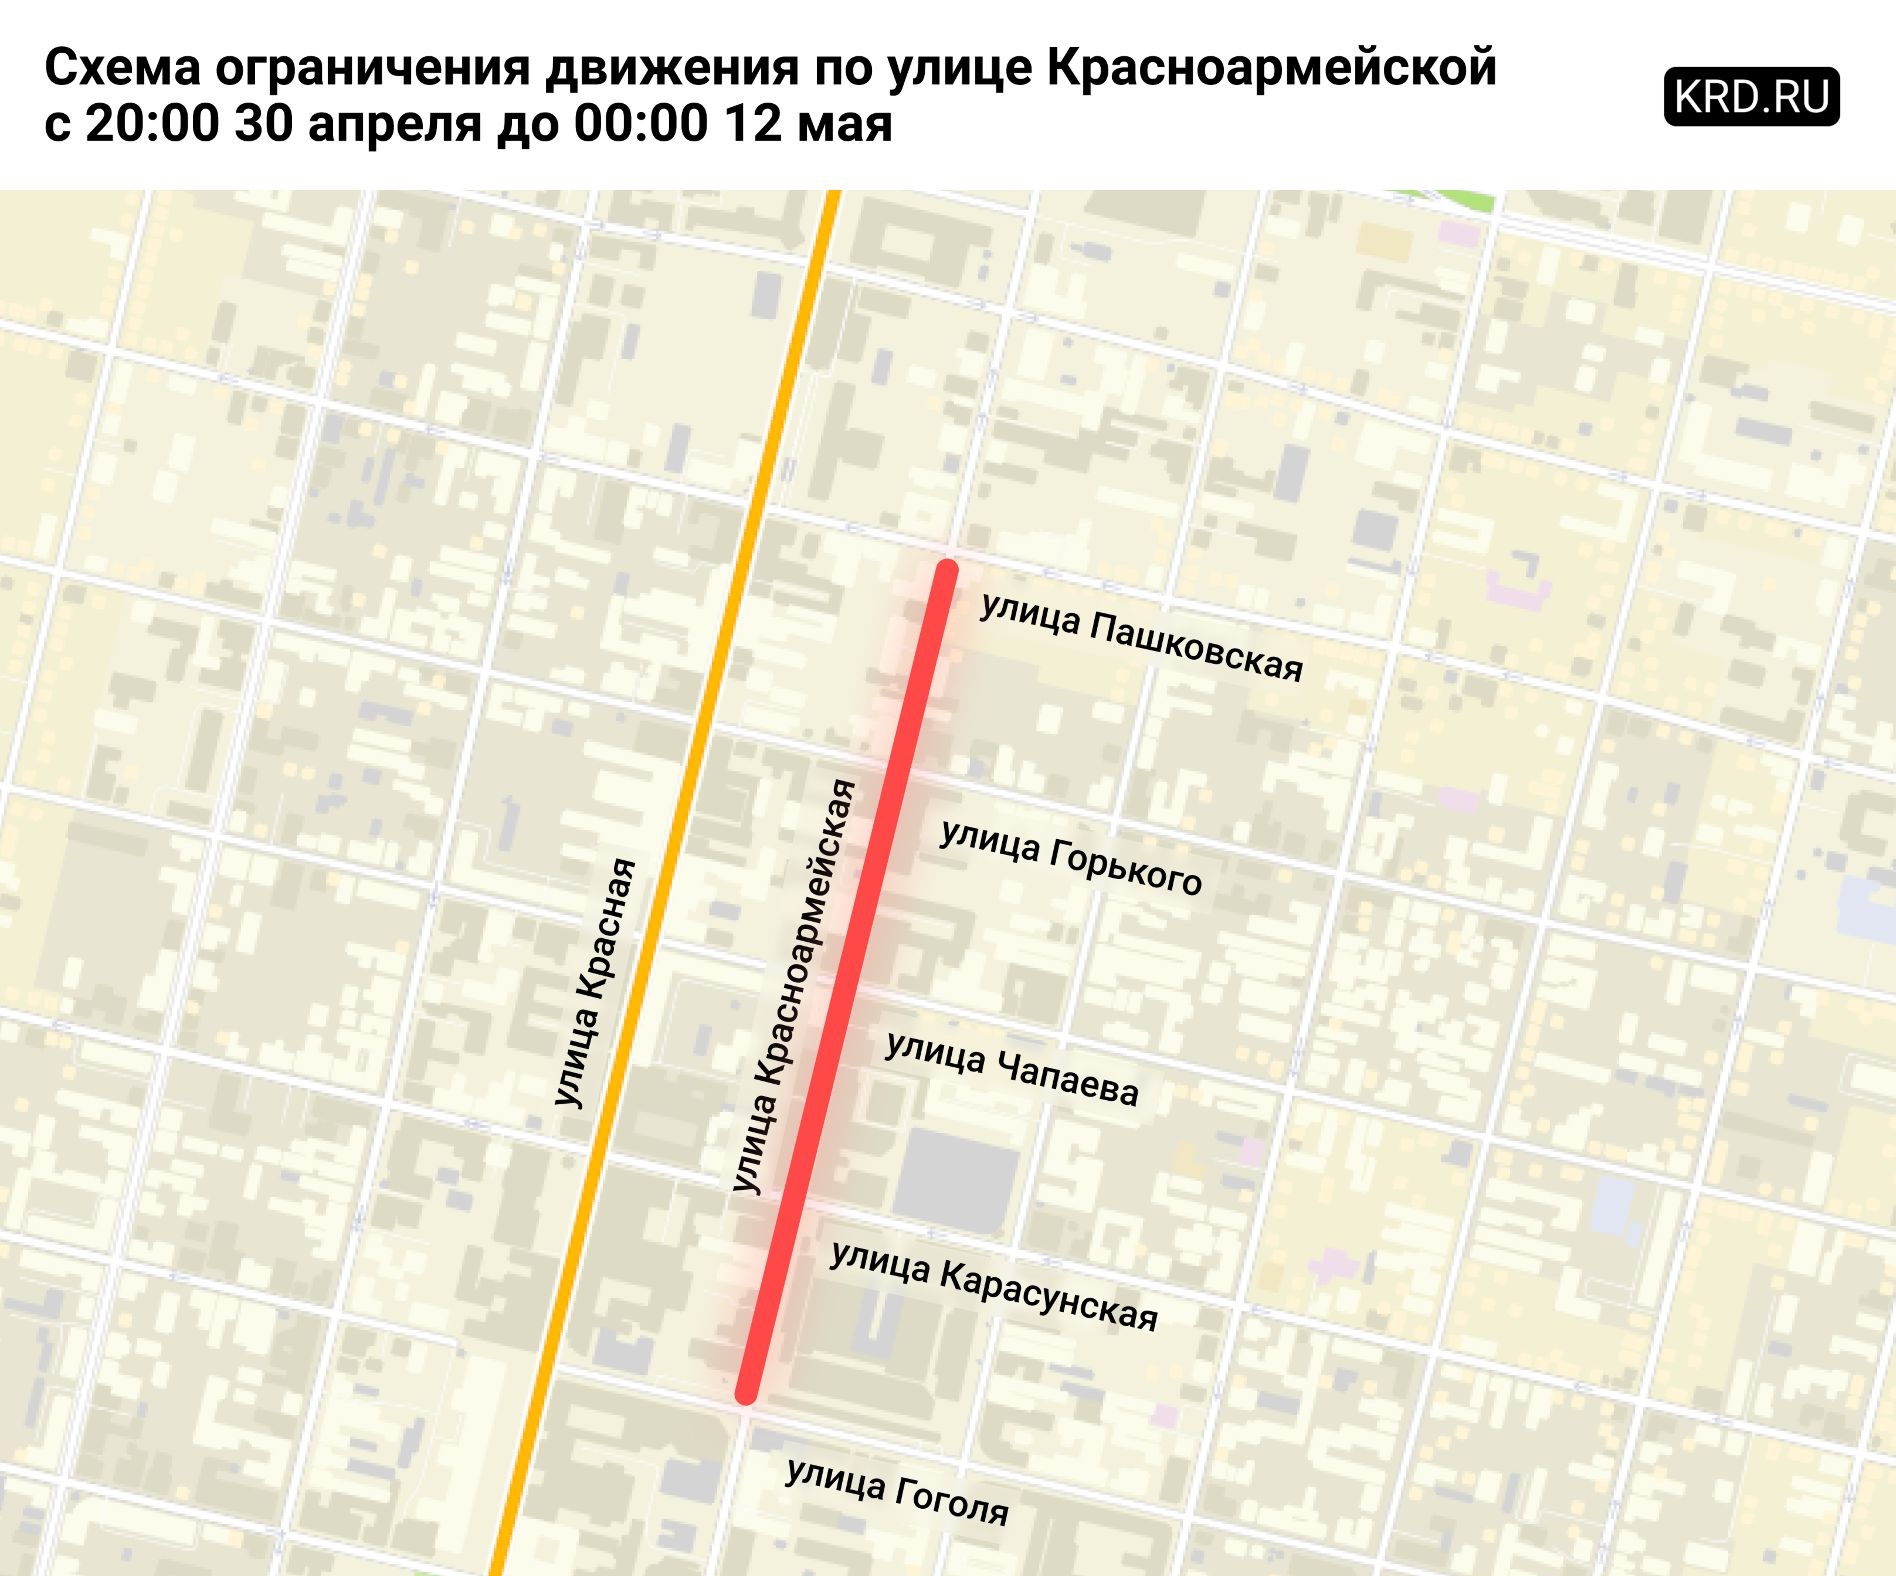 Перекрытие участка Красноармейской протяженностью 700 метров стало смелым экспериментом со стороны городских властей